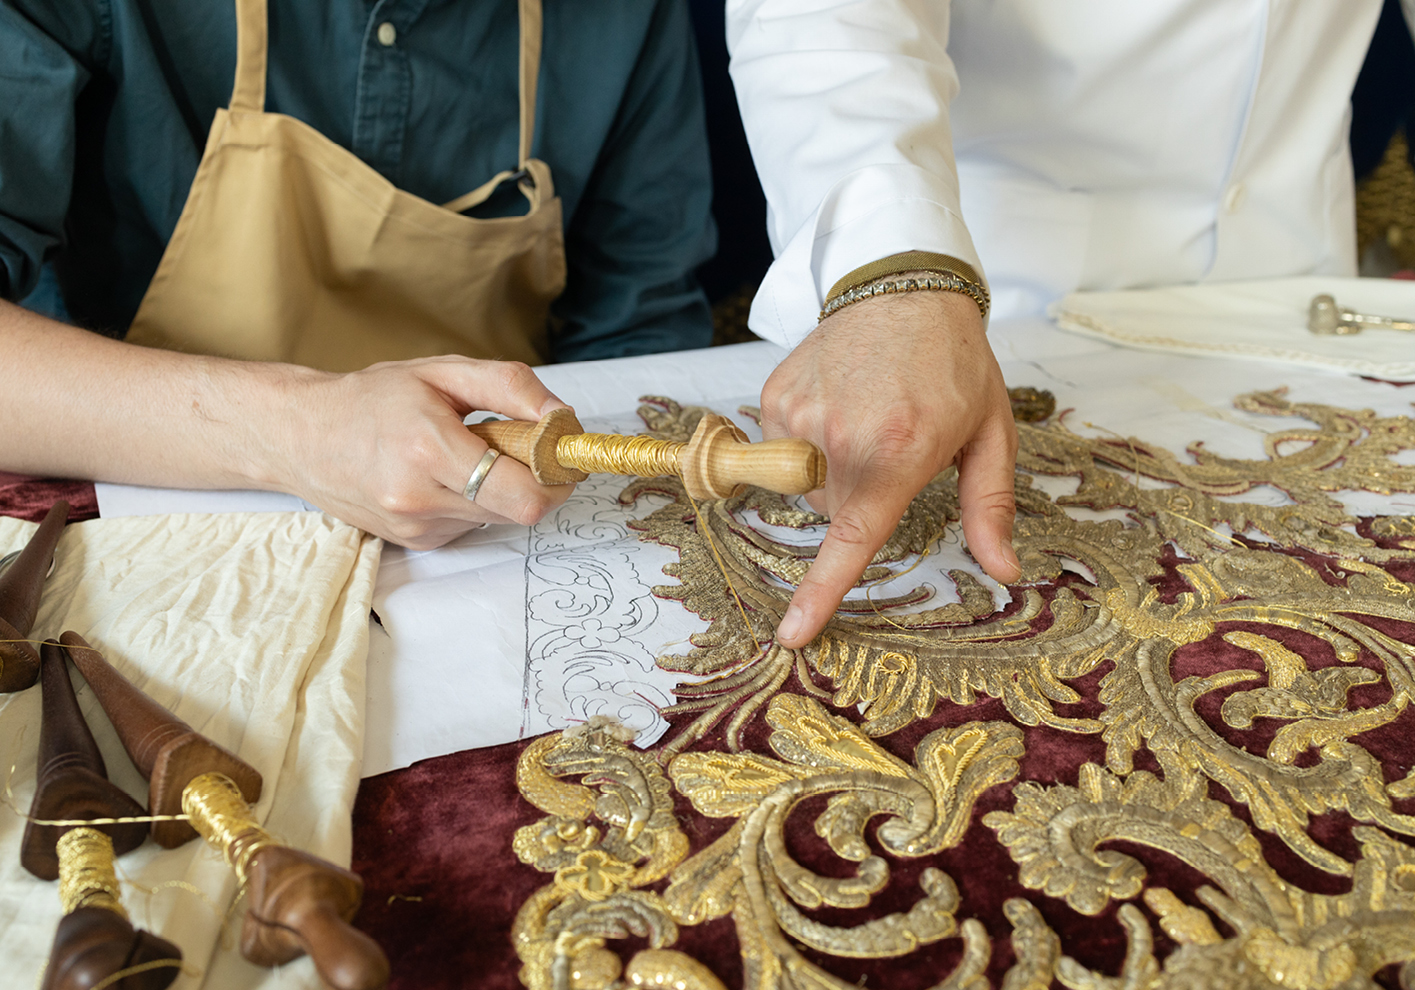 José Luis Sanchez Exposito & Gonzalo Garcia Cuevas working on gold thread embroidery